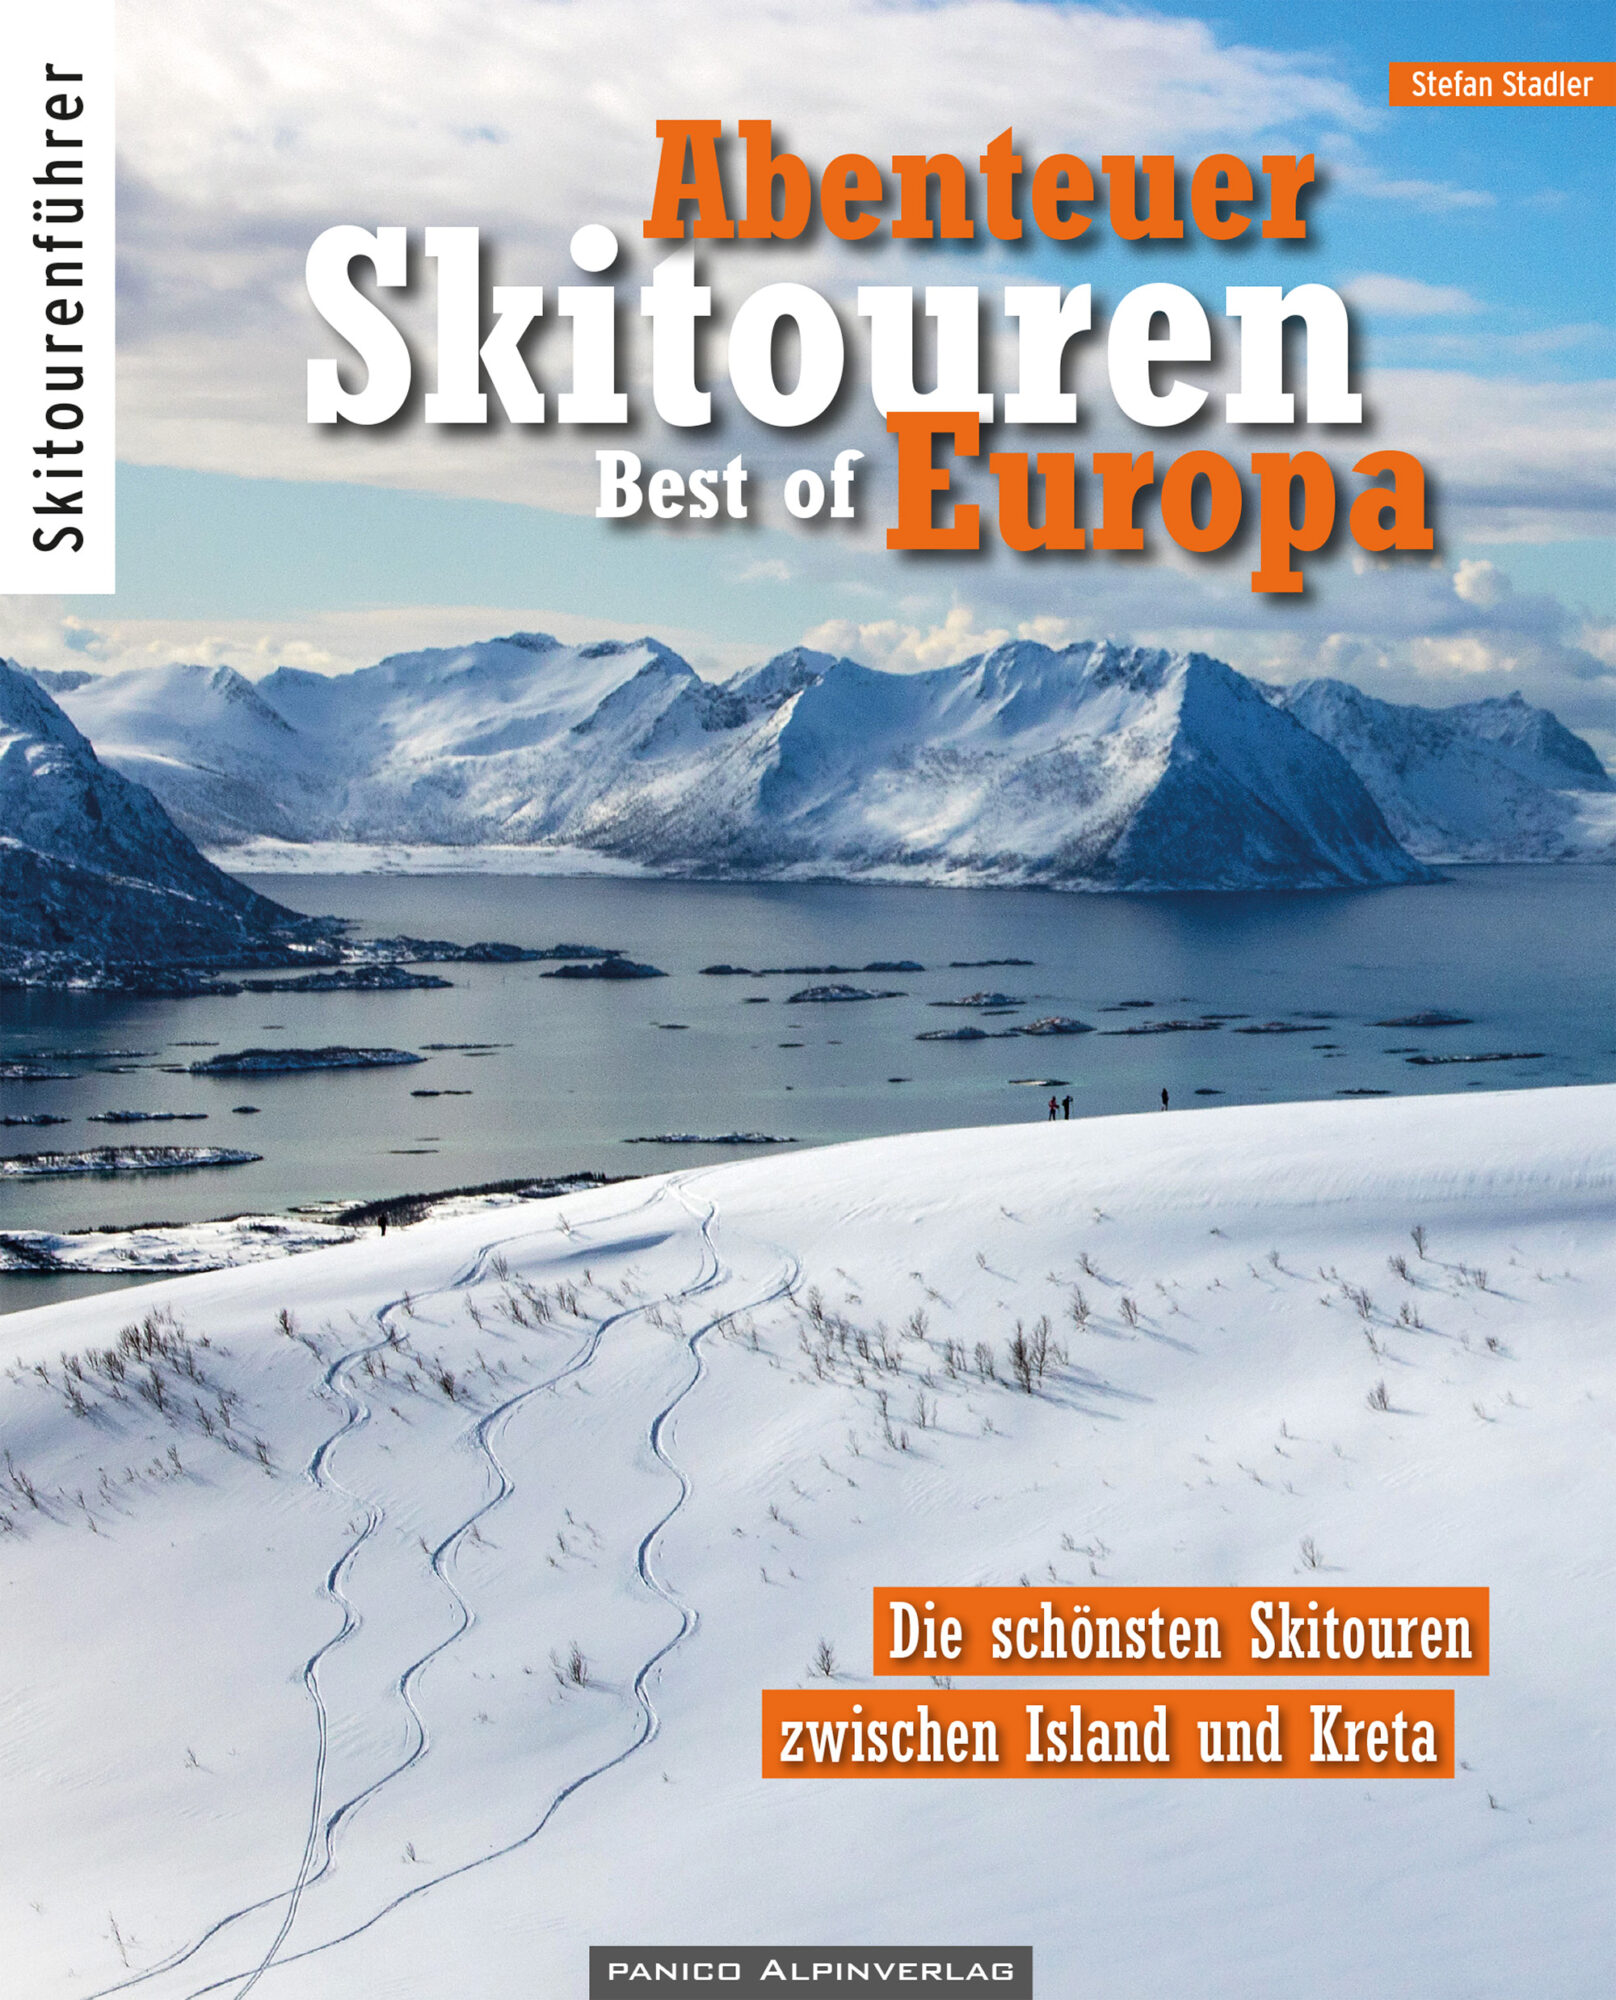 Cover Abenteuer Skitouren (c) Panico Alpinverlag (2)